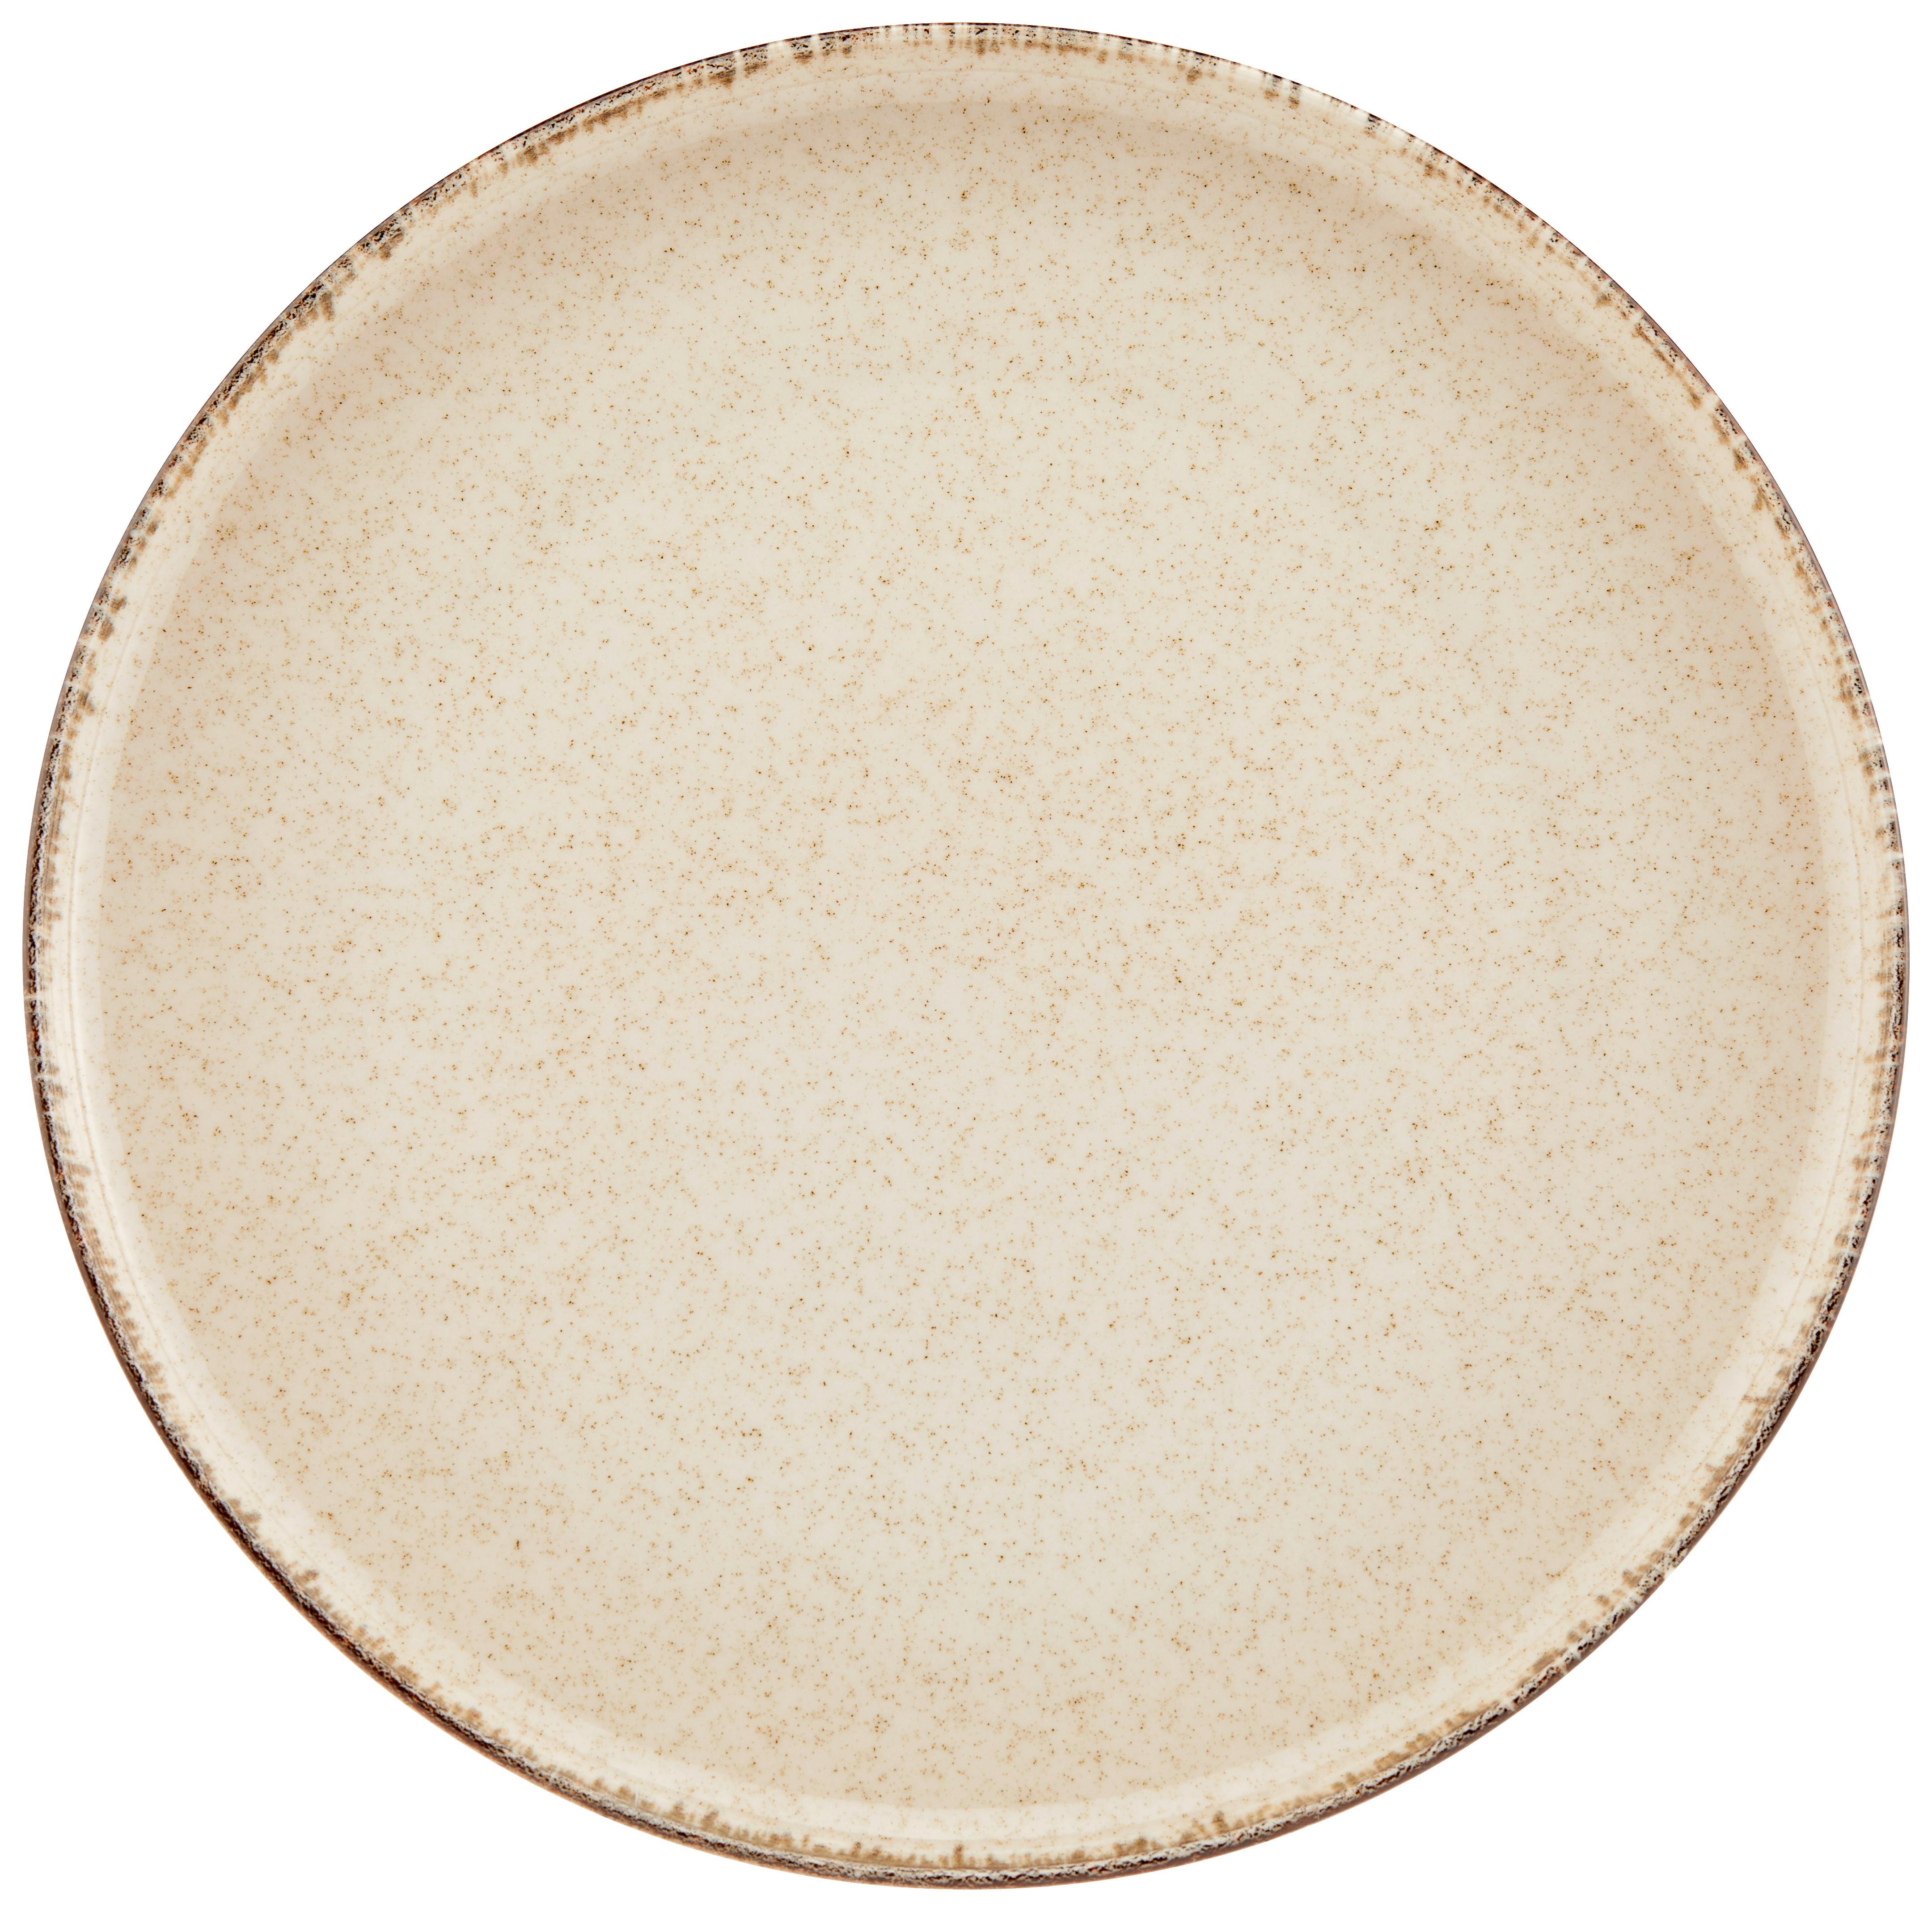 Speiseteller Porzellan Rund, Beige Sonora ca. 27 cm - Beige, MODERN, Keramik (27cm) - James Wood